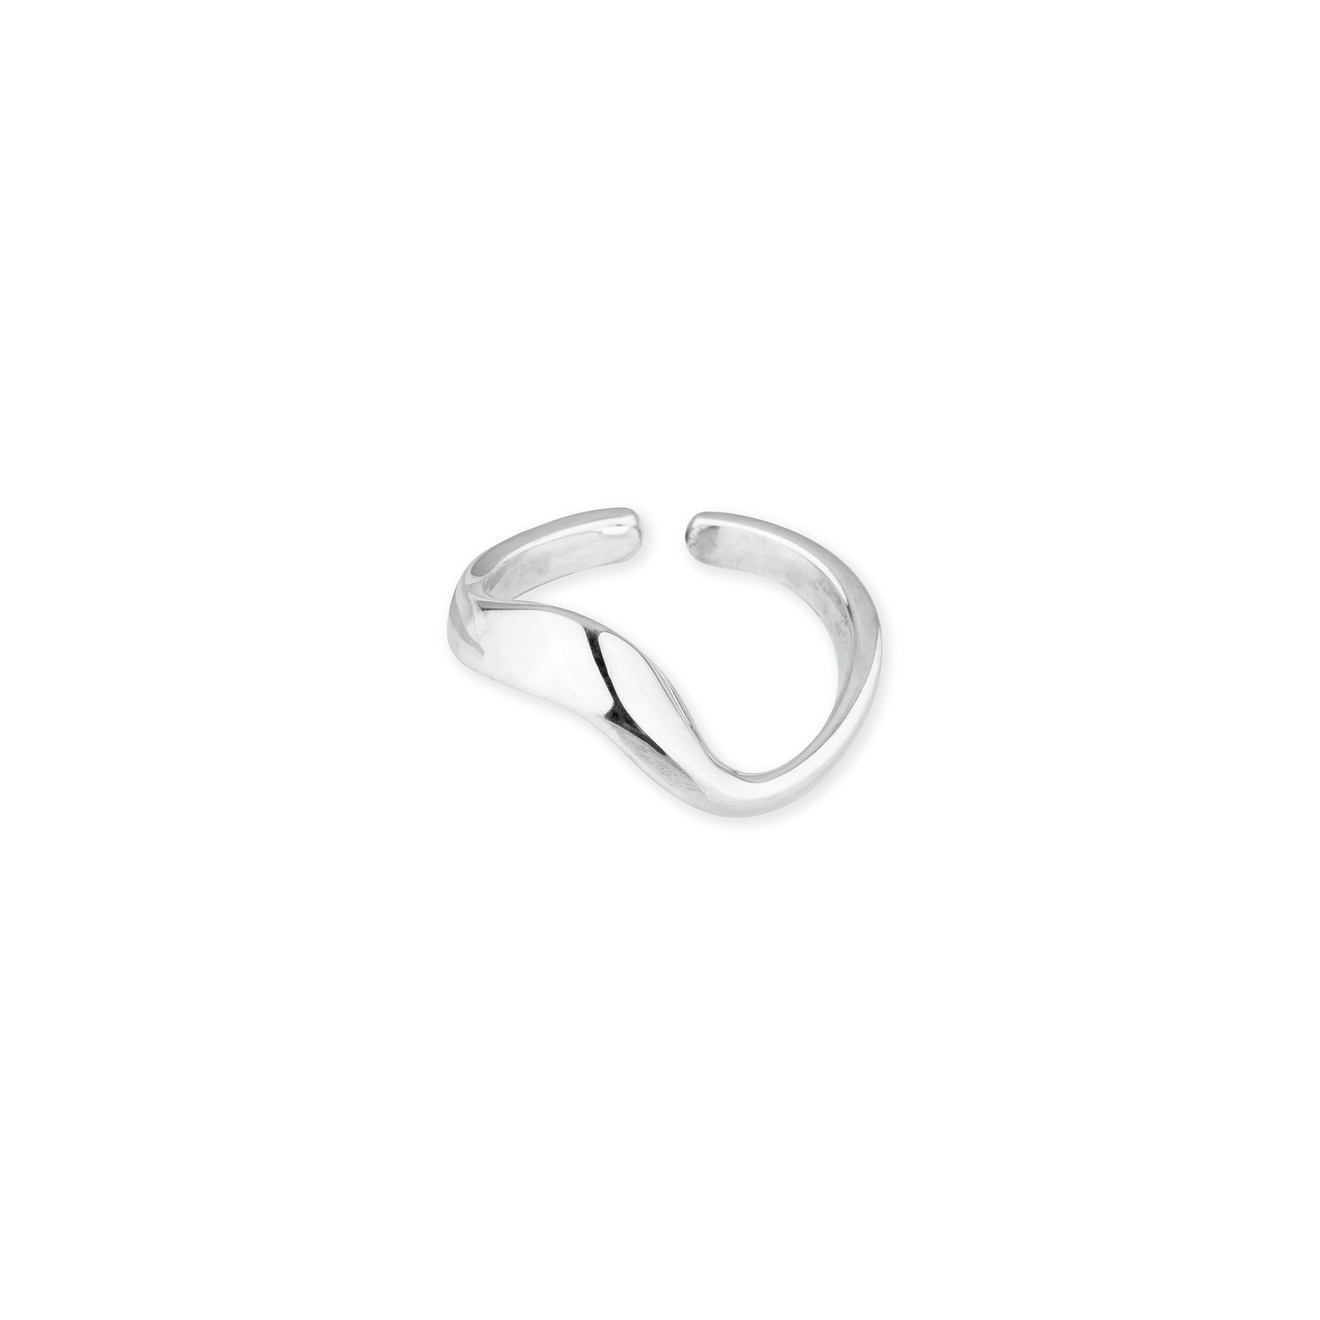 Philippe Audibert Кольцо Clea ring bress с серебряным покрытием philippe audibert кольцо neal ring с серебряным покрытием с черной эмалью